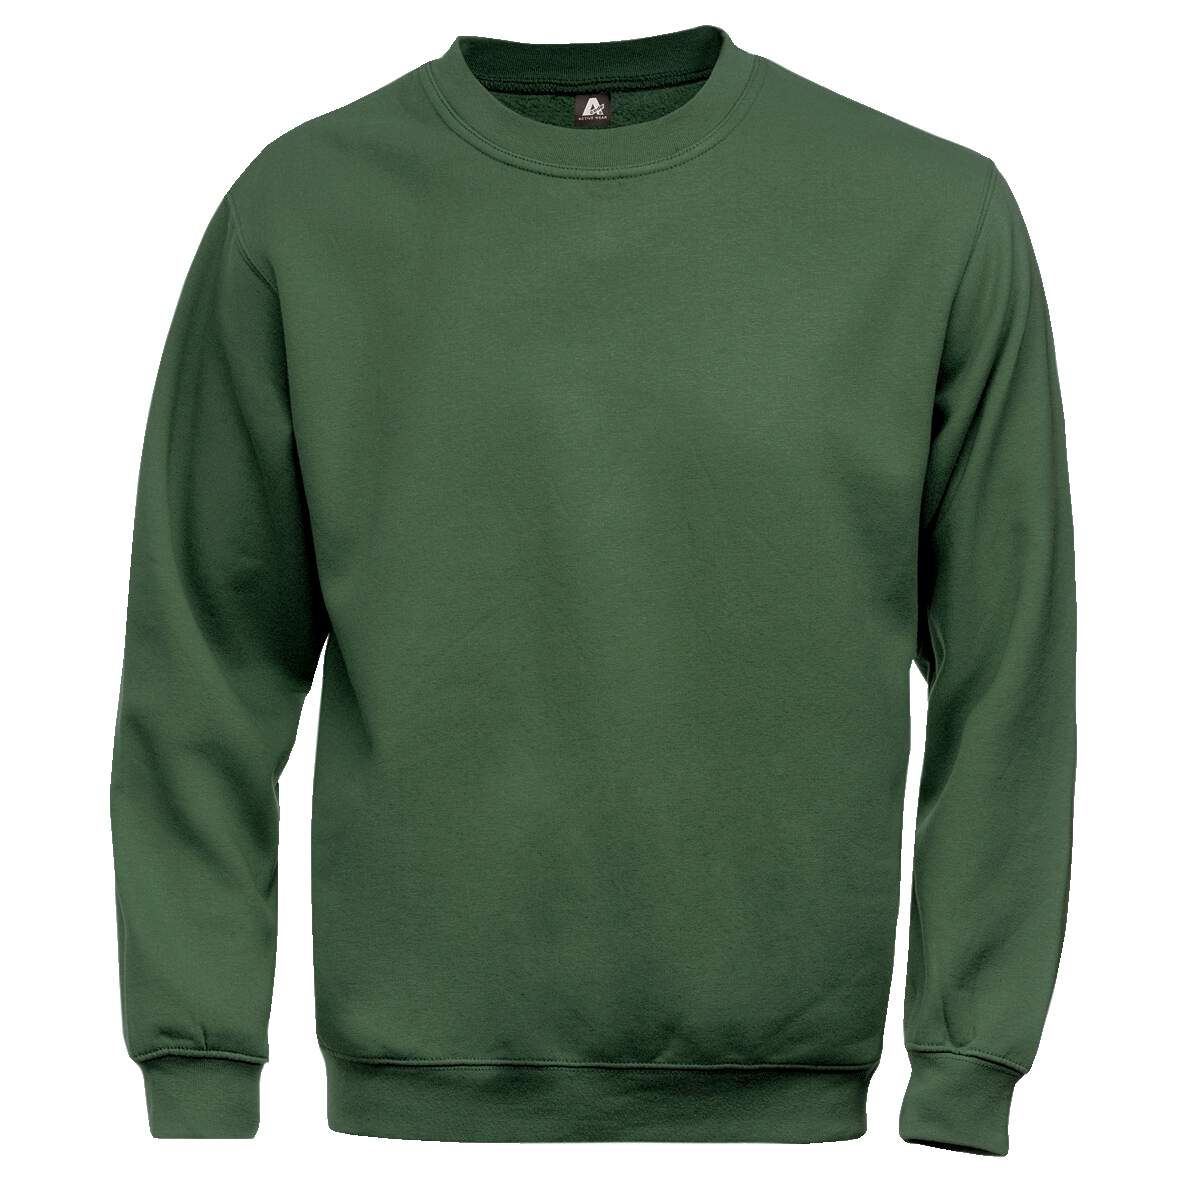 1181260 - Sweatshirt grün 100225